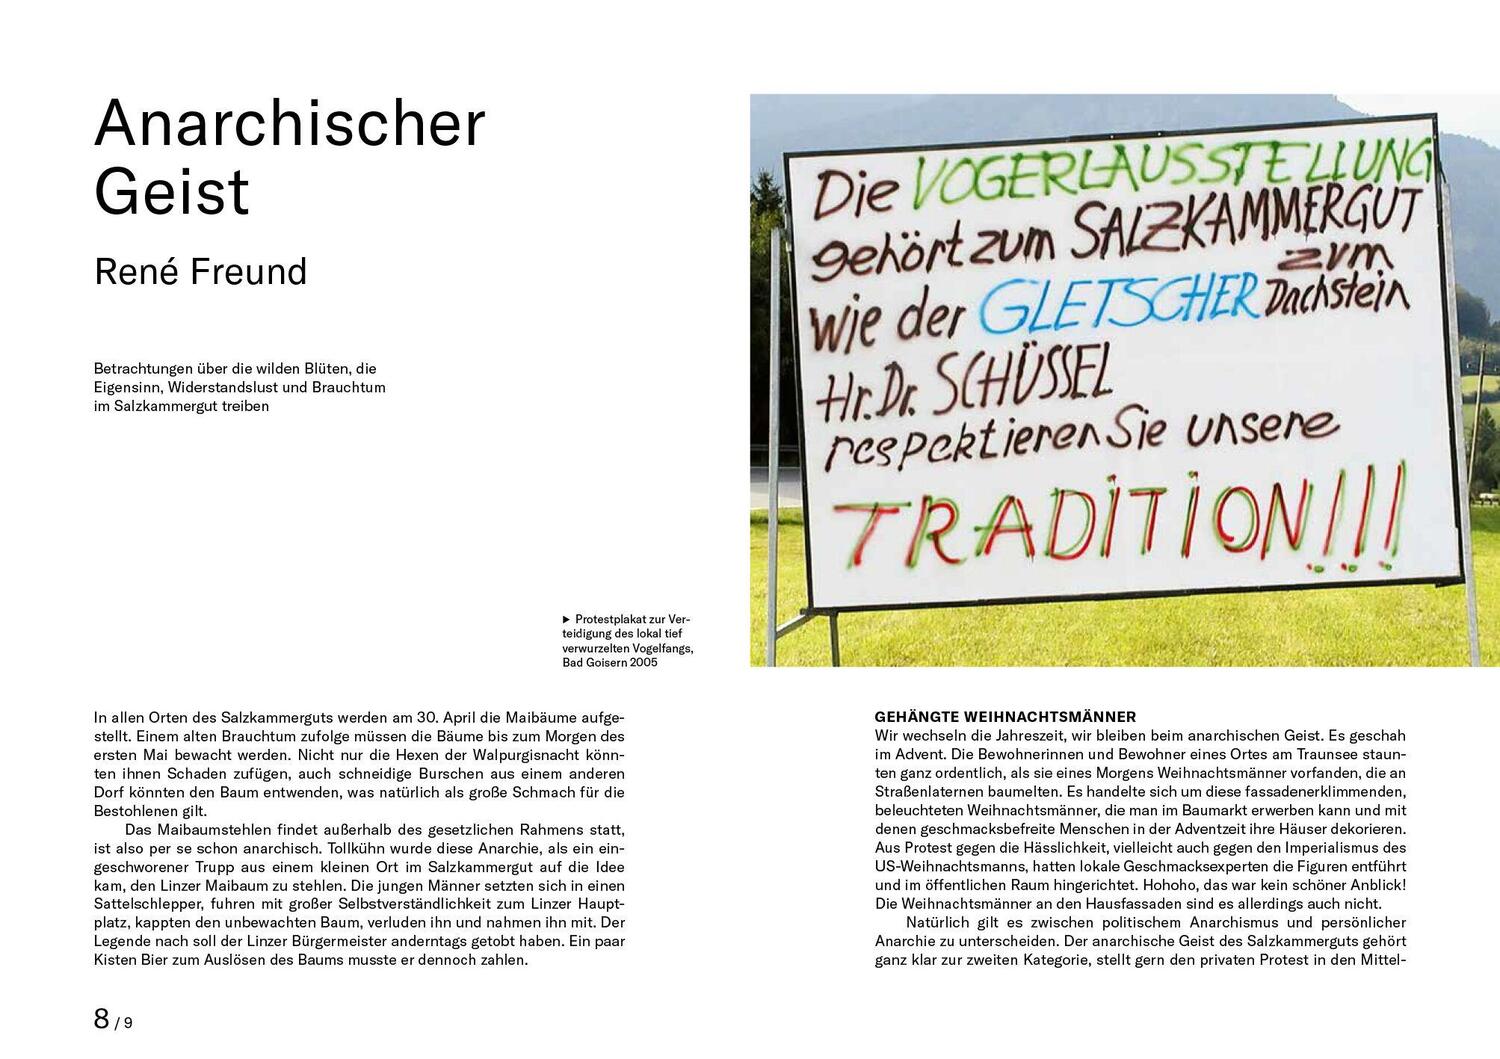 Bild: 9783791380162 | Salz Seen Land | Julia Kospach (u. a.) | Buch | 304 S. | Deutsch